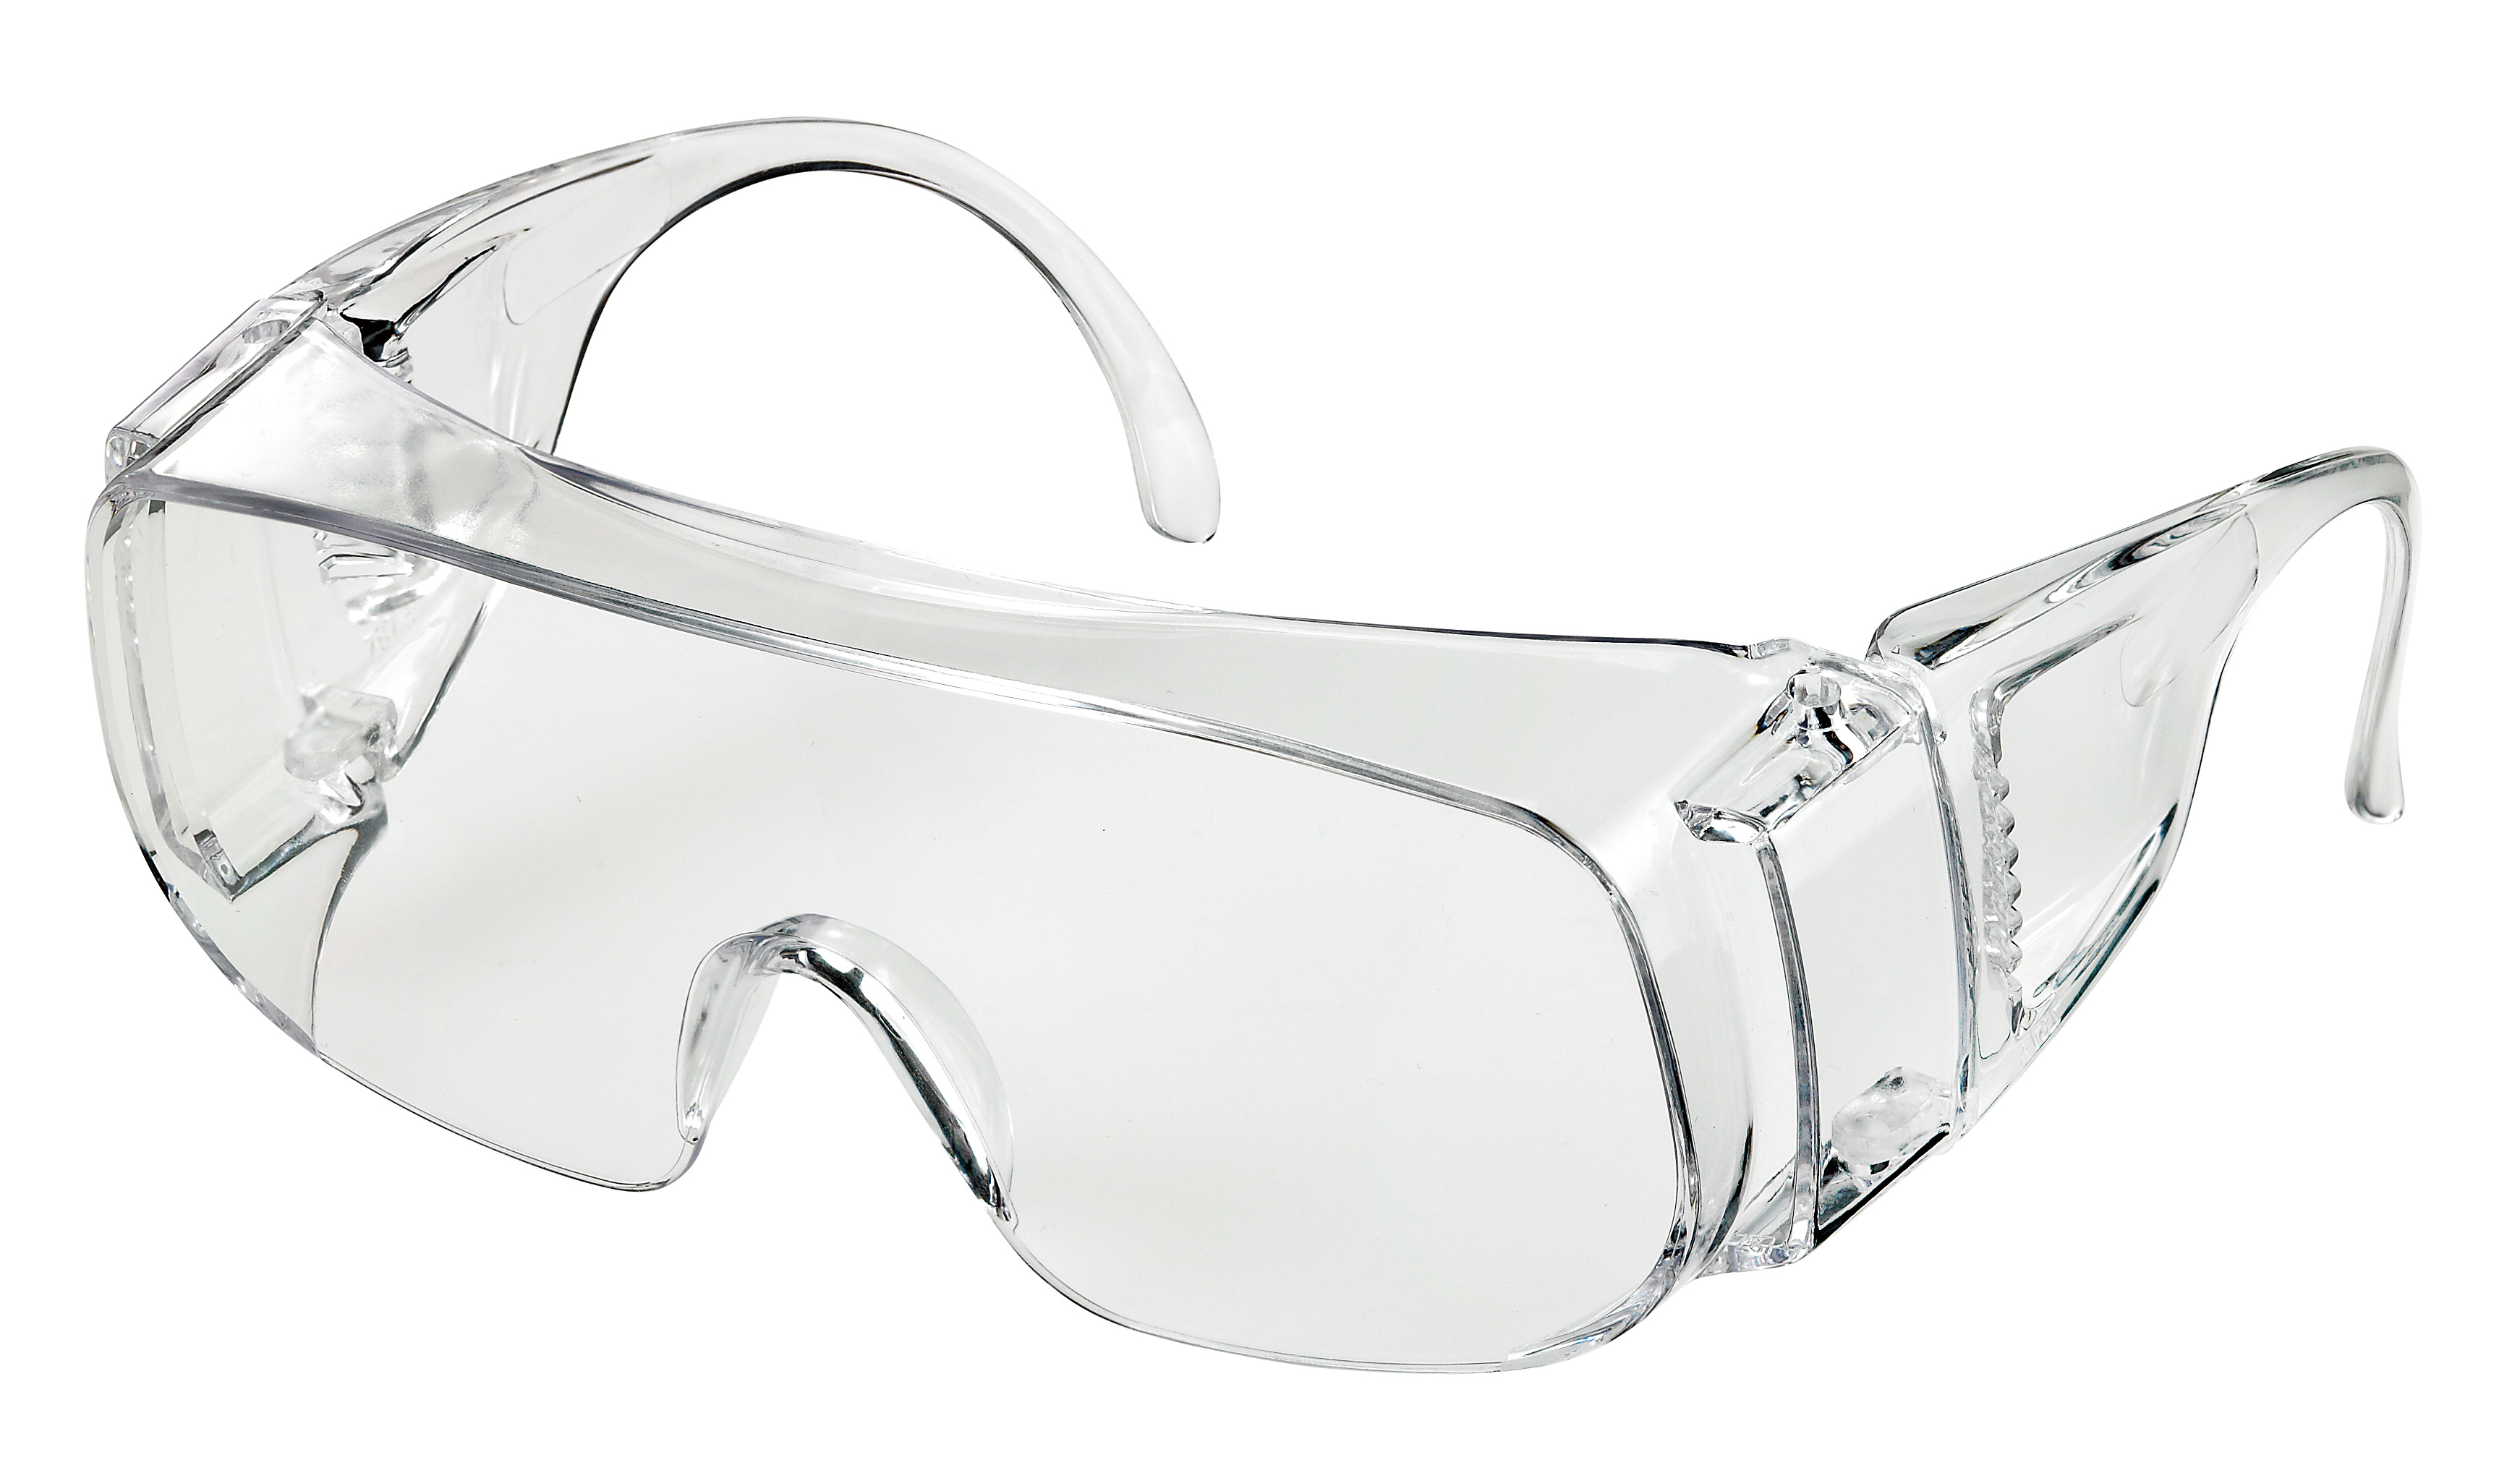 Safety goggle Z-640